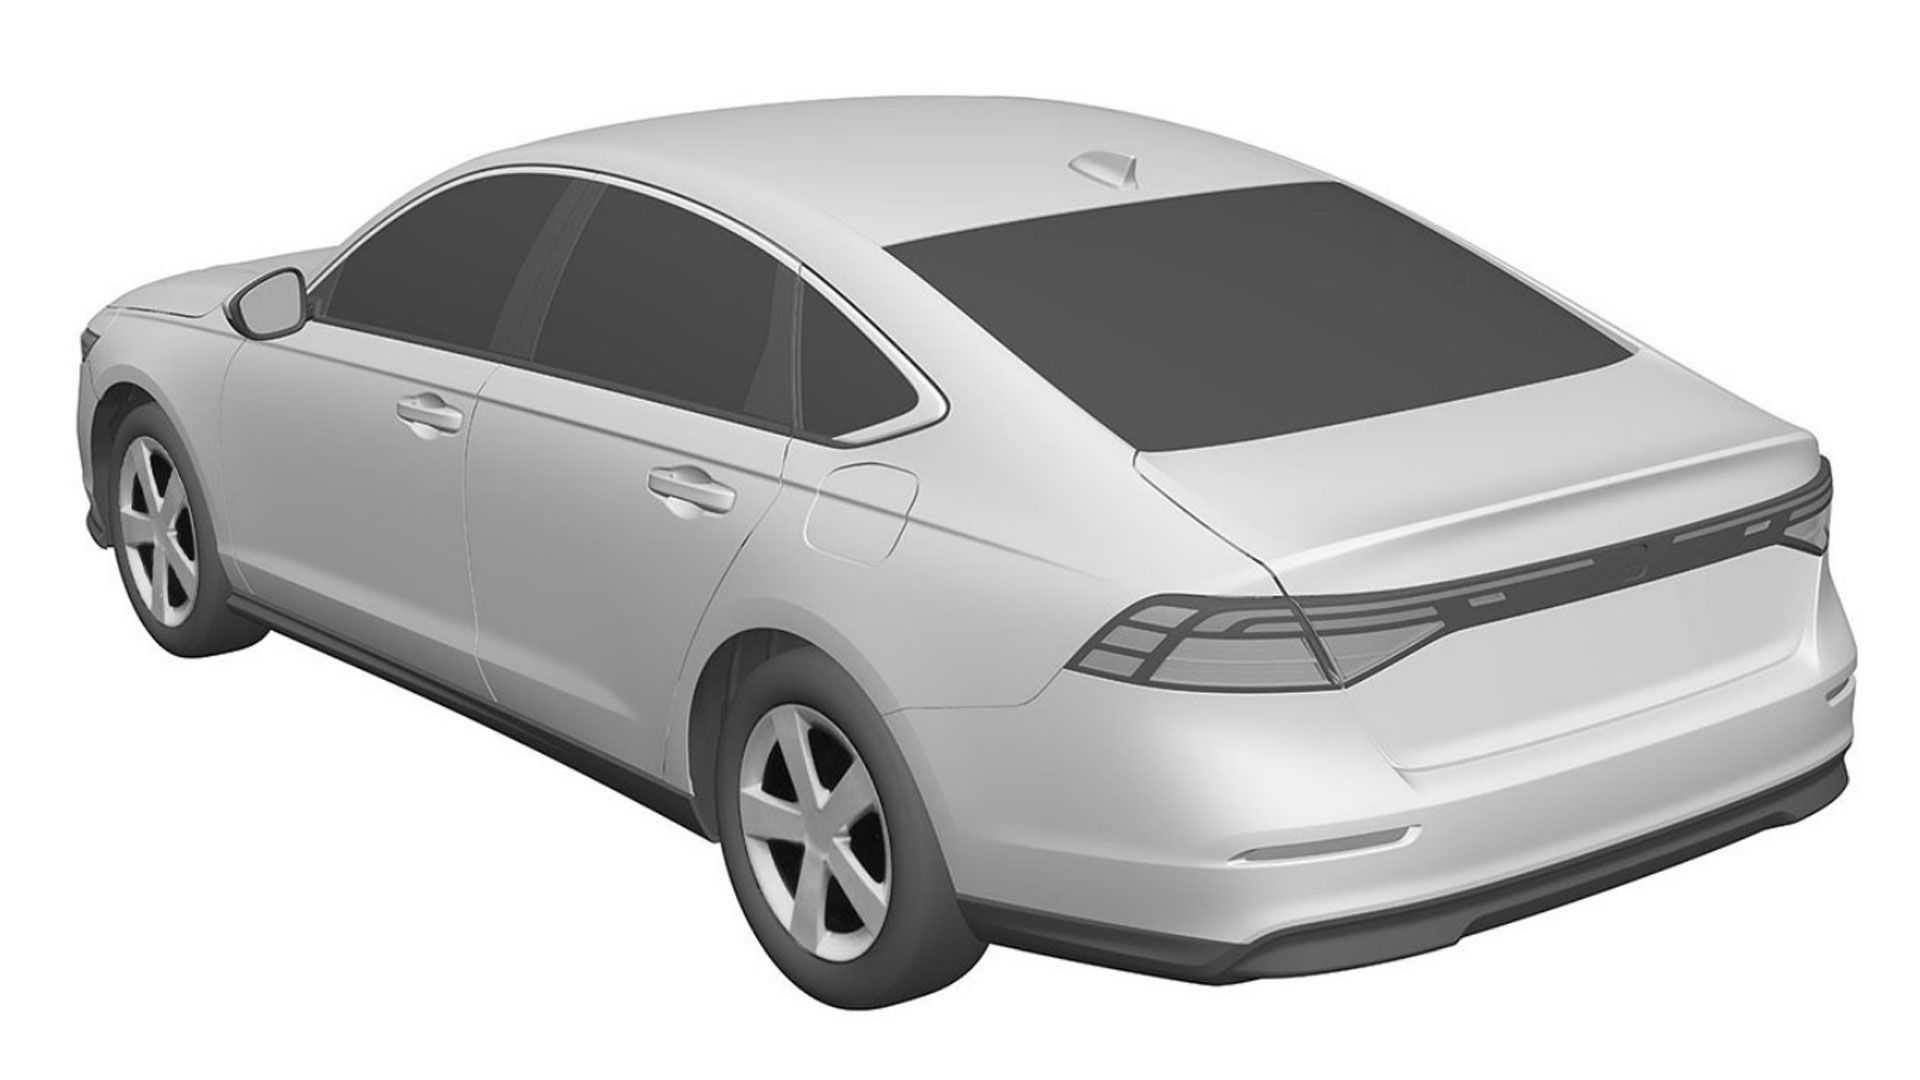 Yeni Honda Accord'un patent görselleri ortaya çıktı: İşte tasarımı